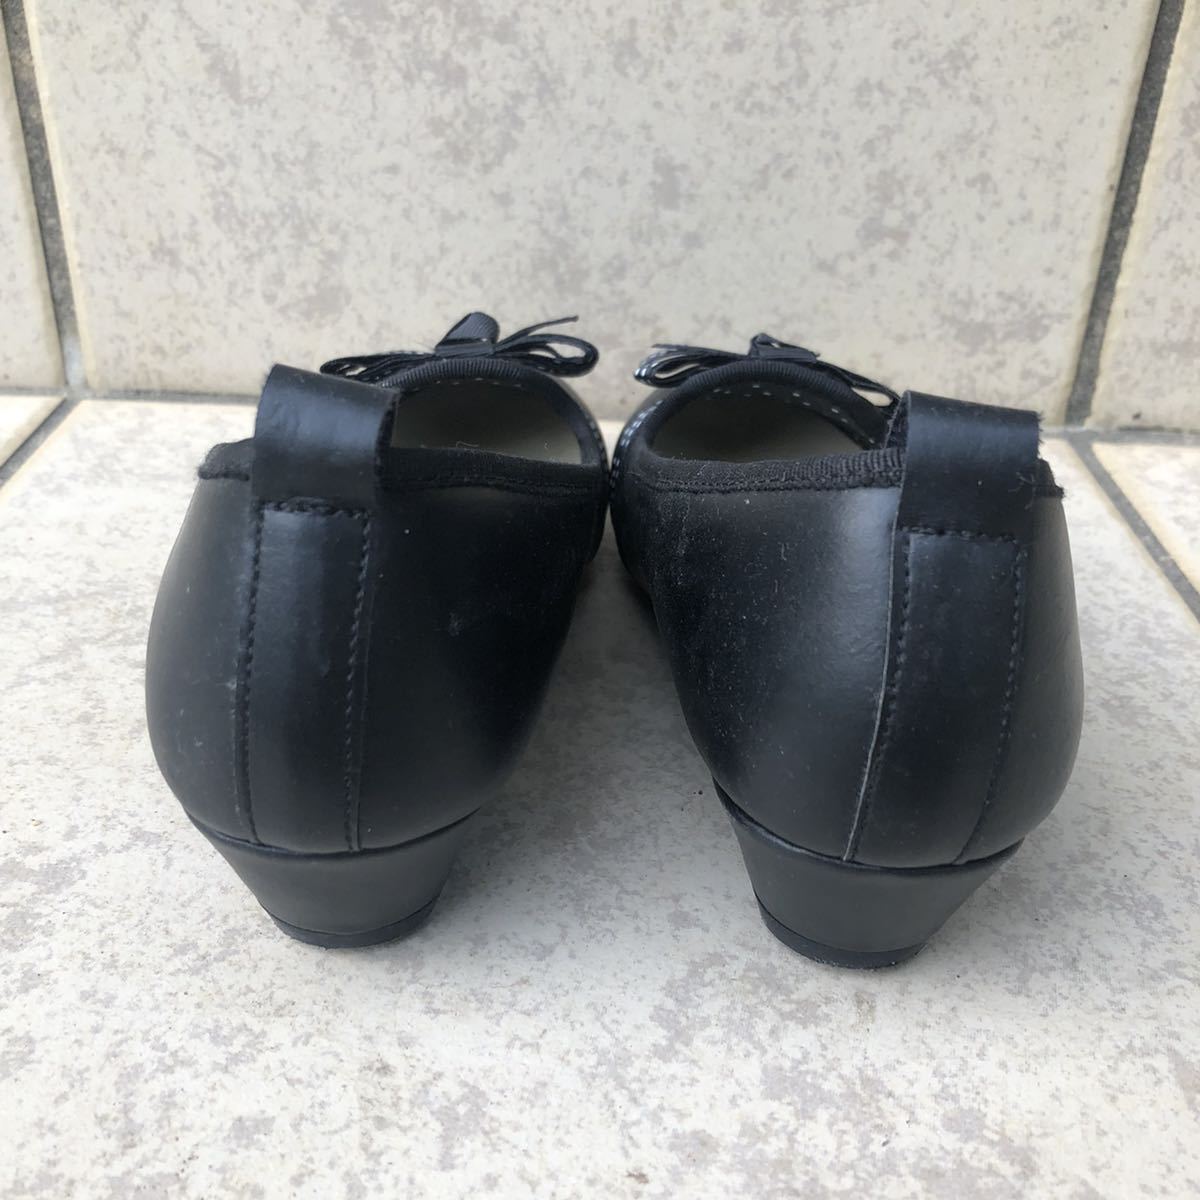  Anne k Anne kAnkAnk Kids формальная обувь 20cm чёрный черный 1 раз салон . надеты для . прекрасный товар девочка туфли-лодочки ..... каблук!